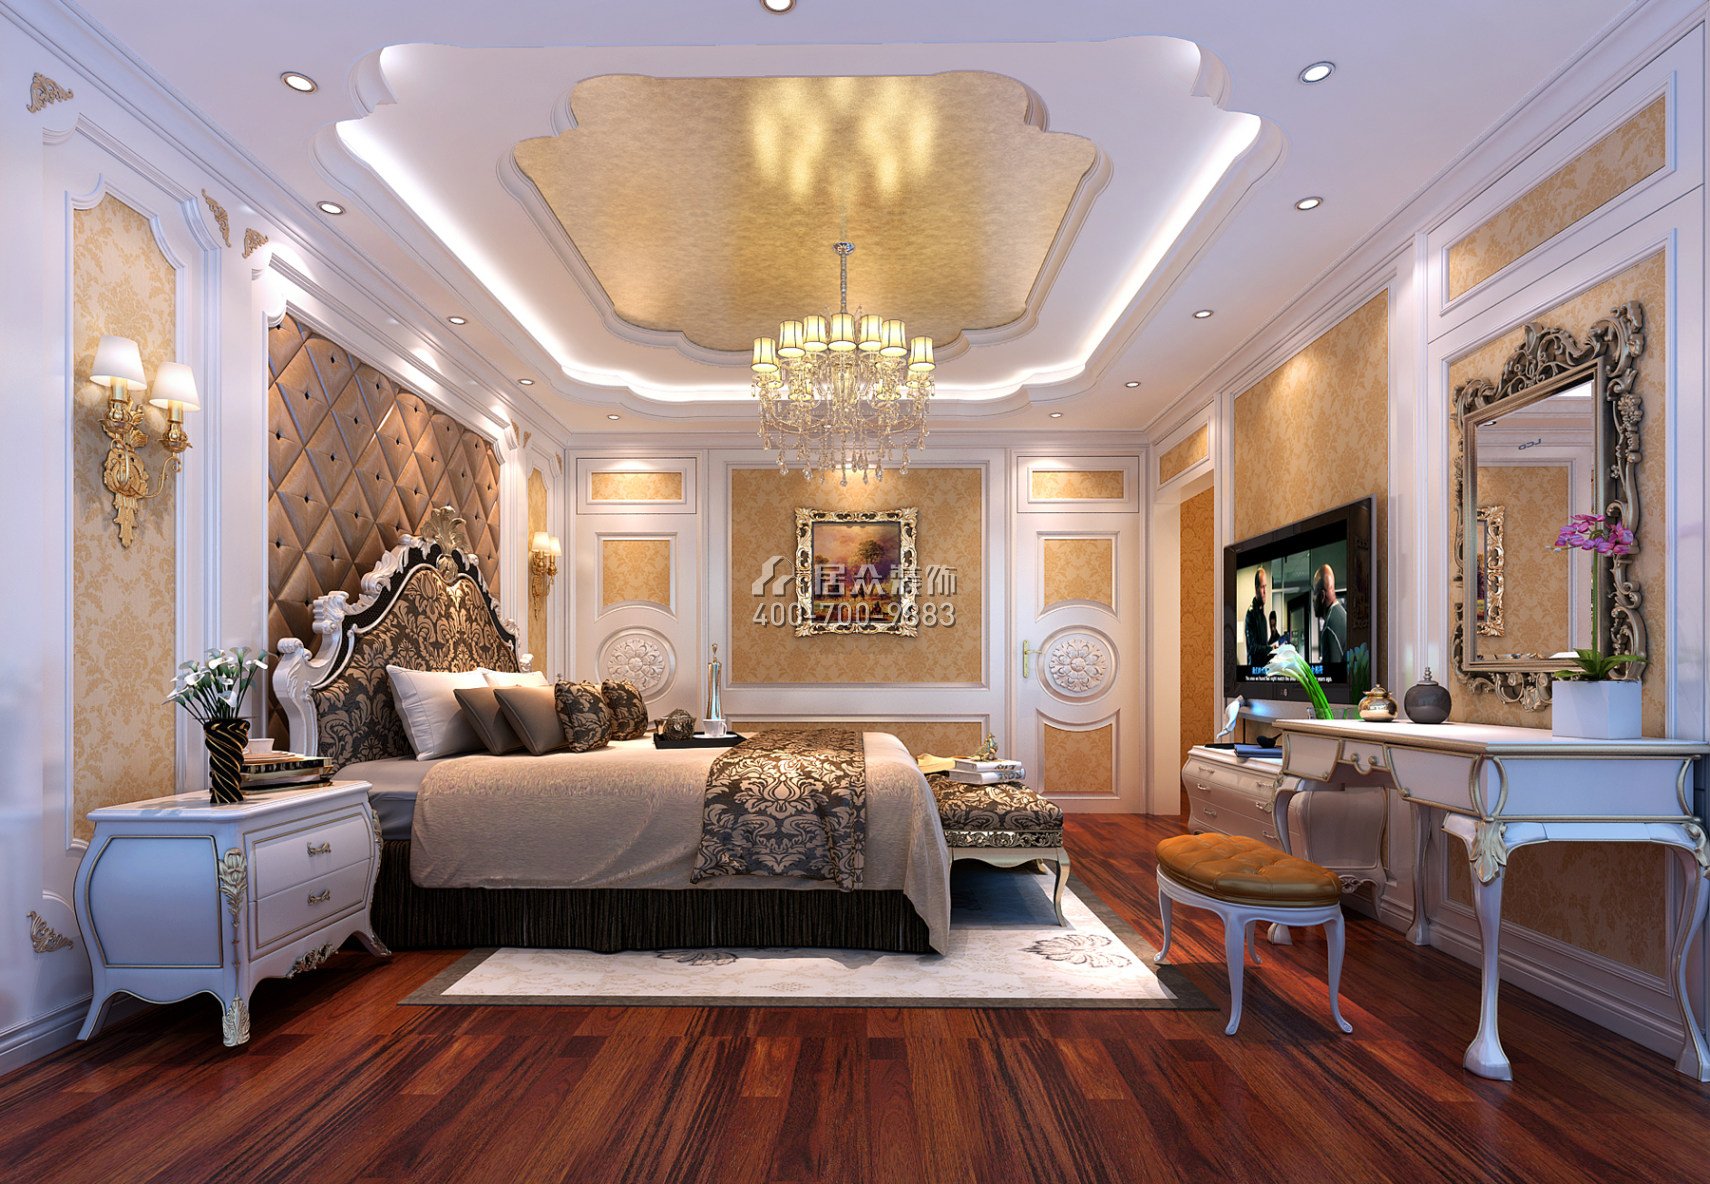 山语清晖177平方米欧式风格平层户型卧室装修效果图